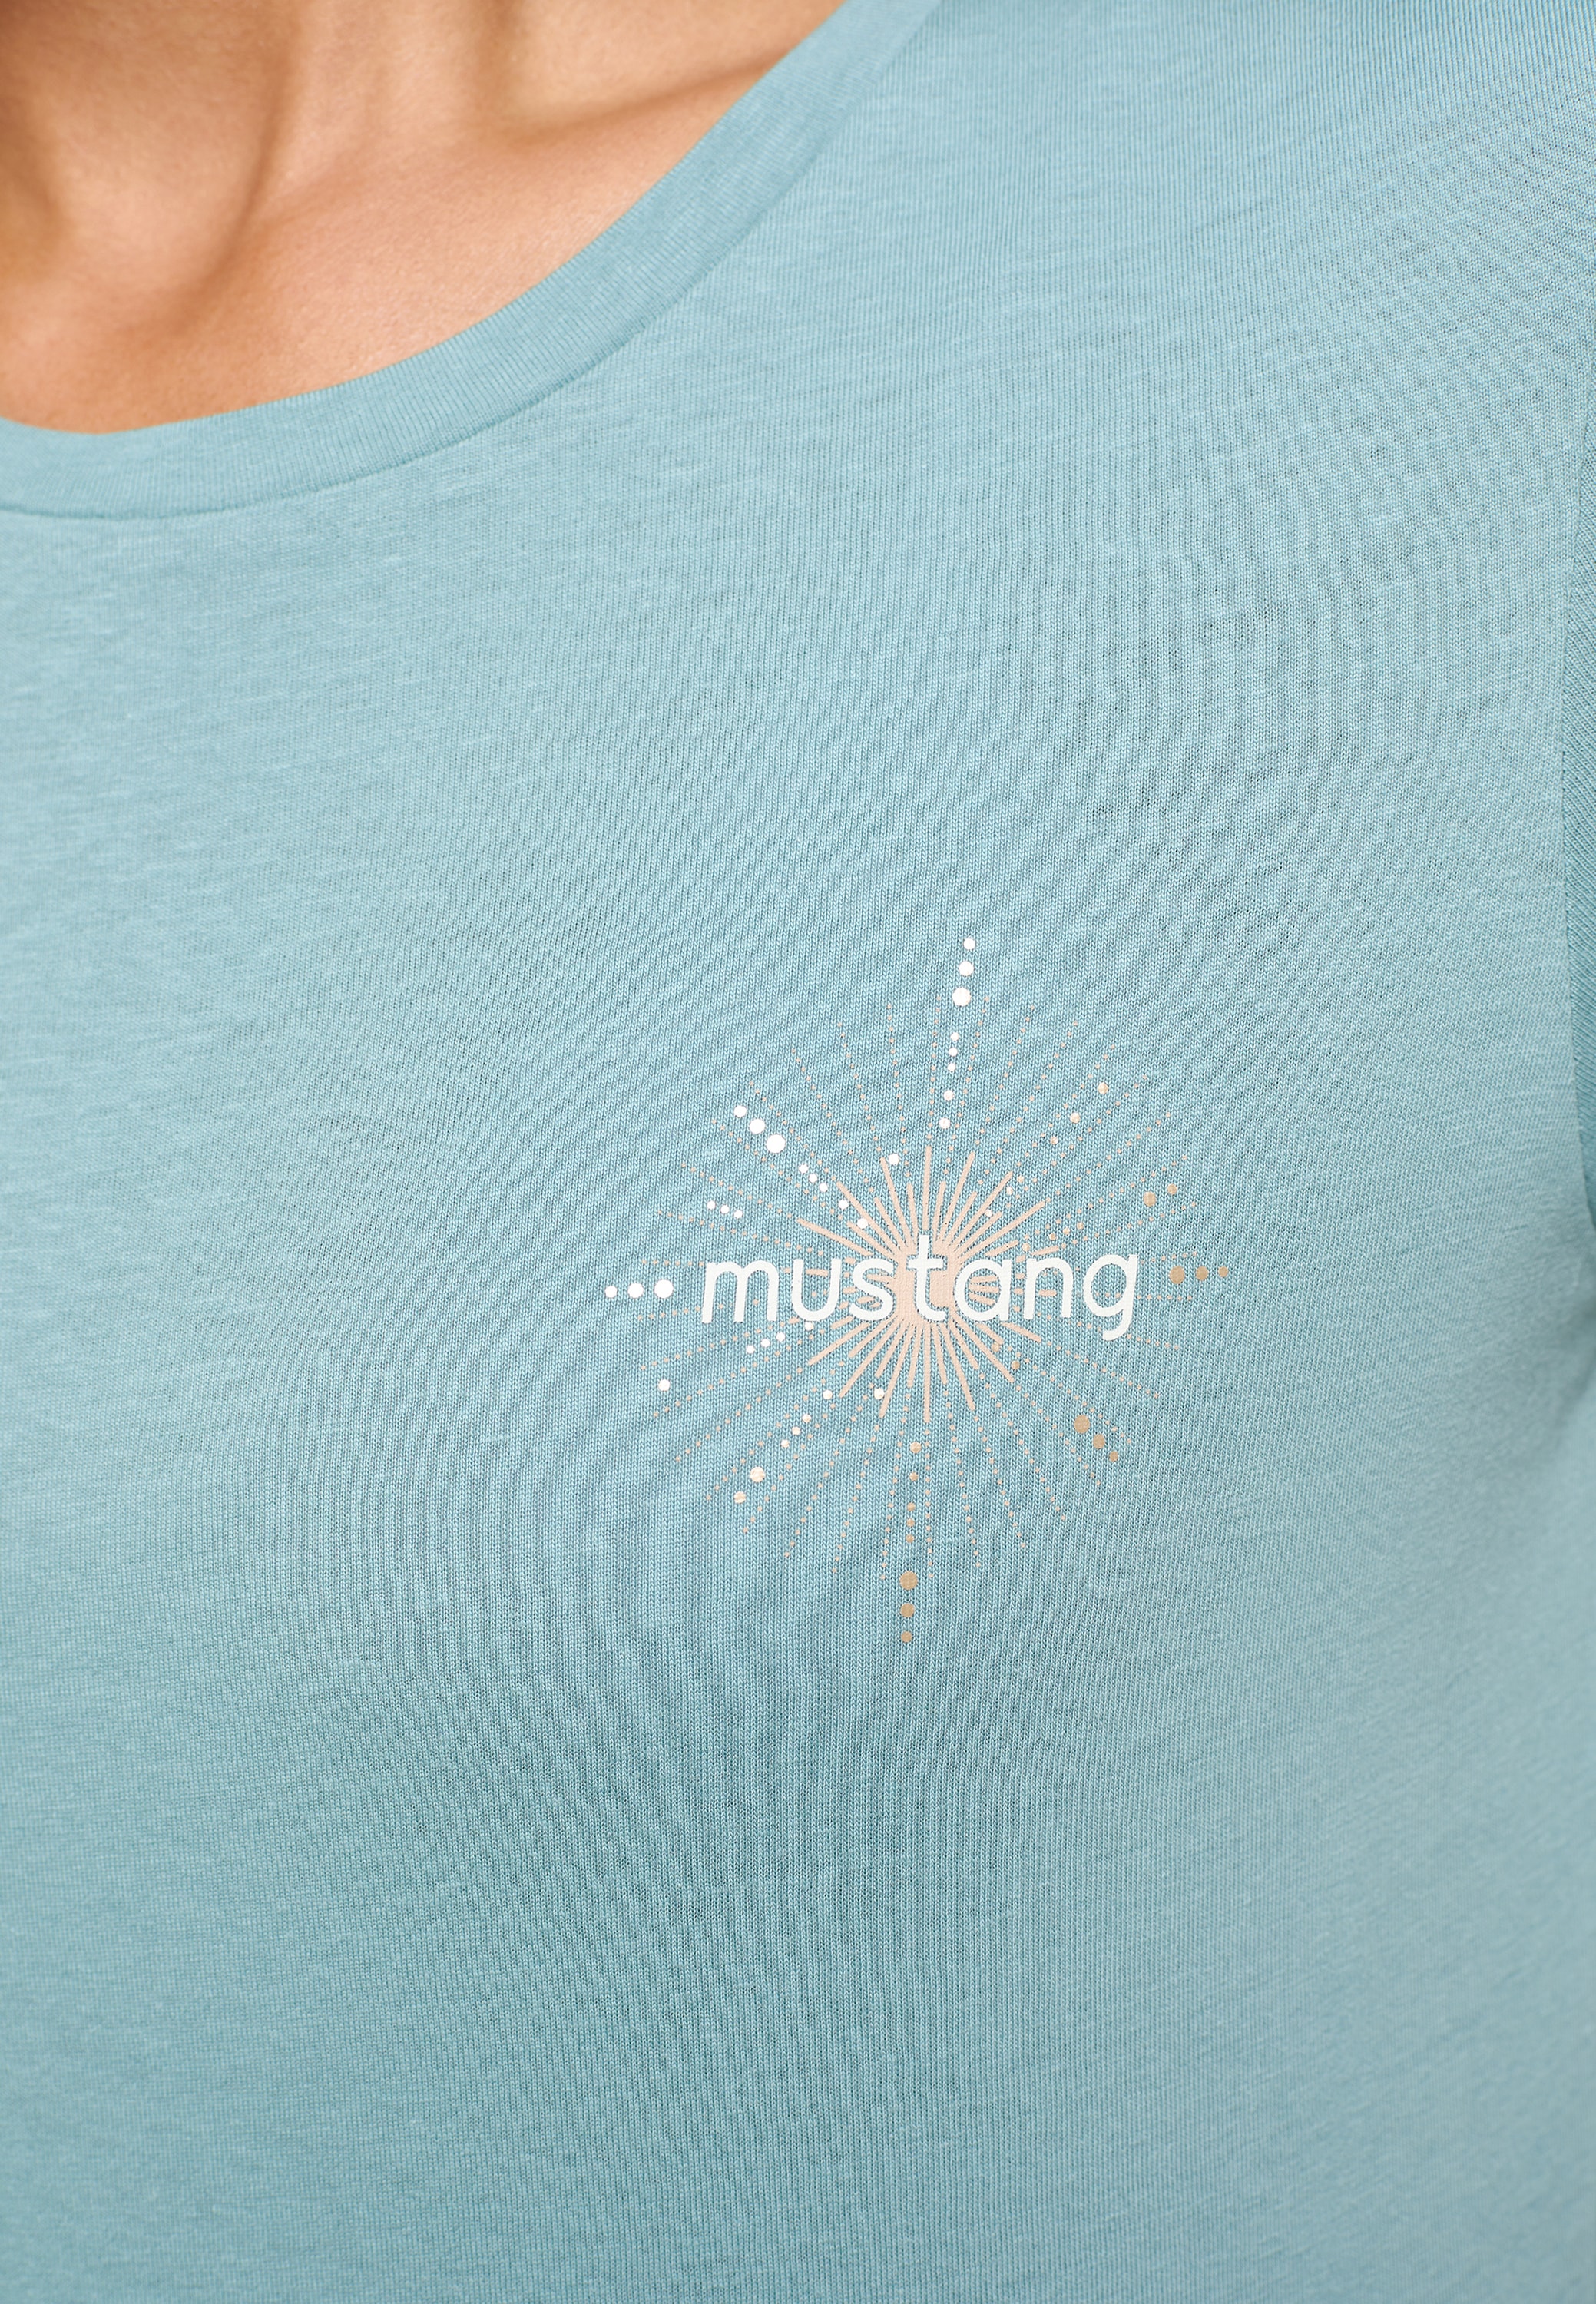 Chestprint« MUSTANG C Alexia online OTTO »Style bestellen T-Shirt bei